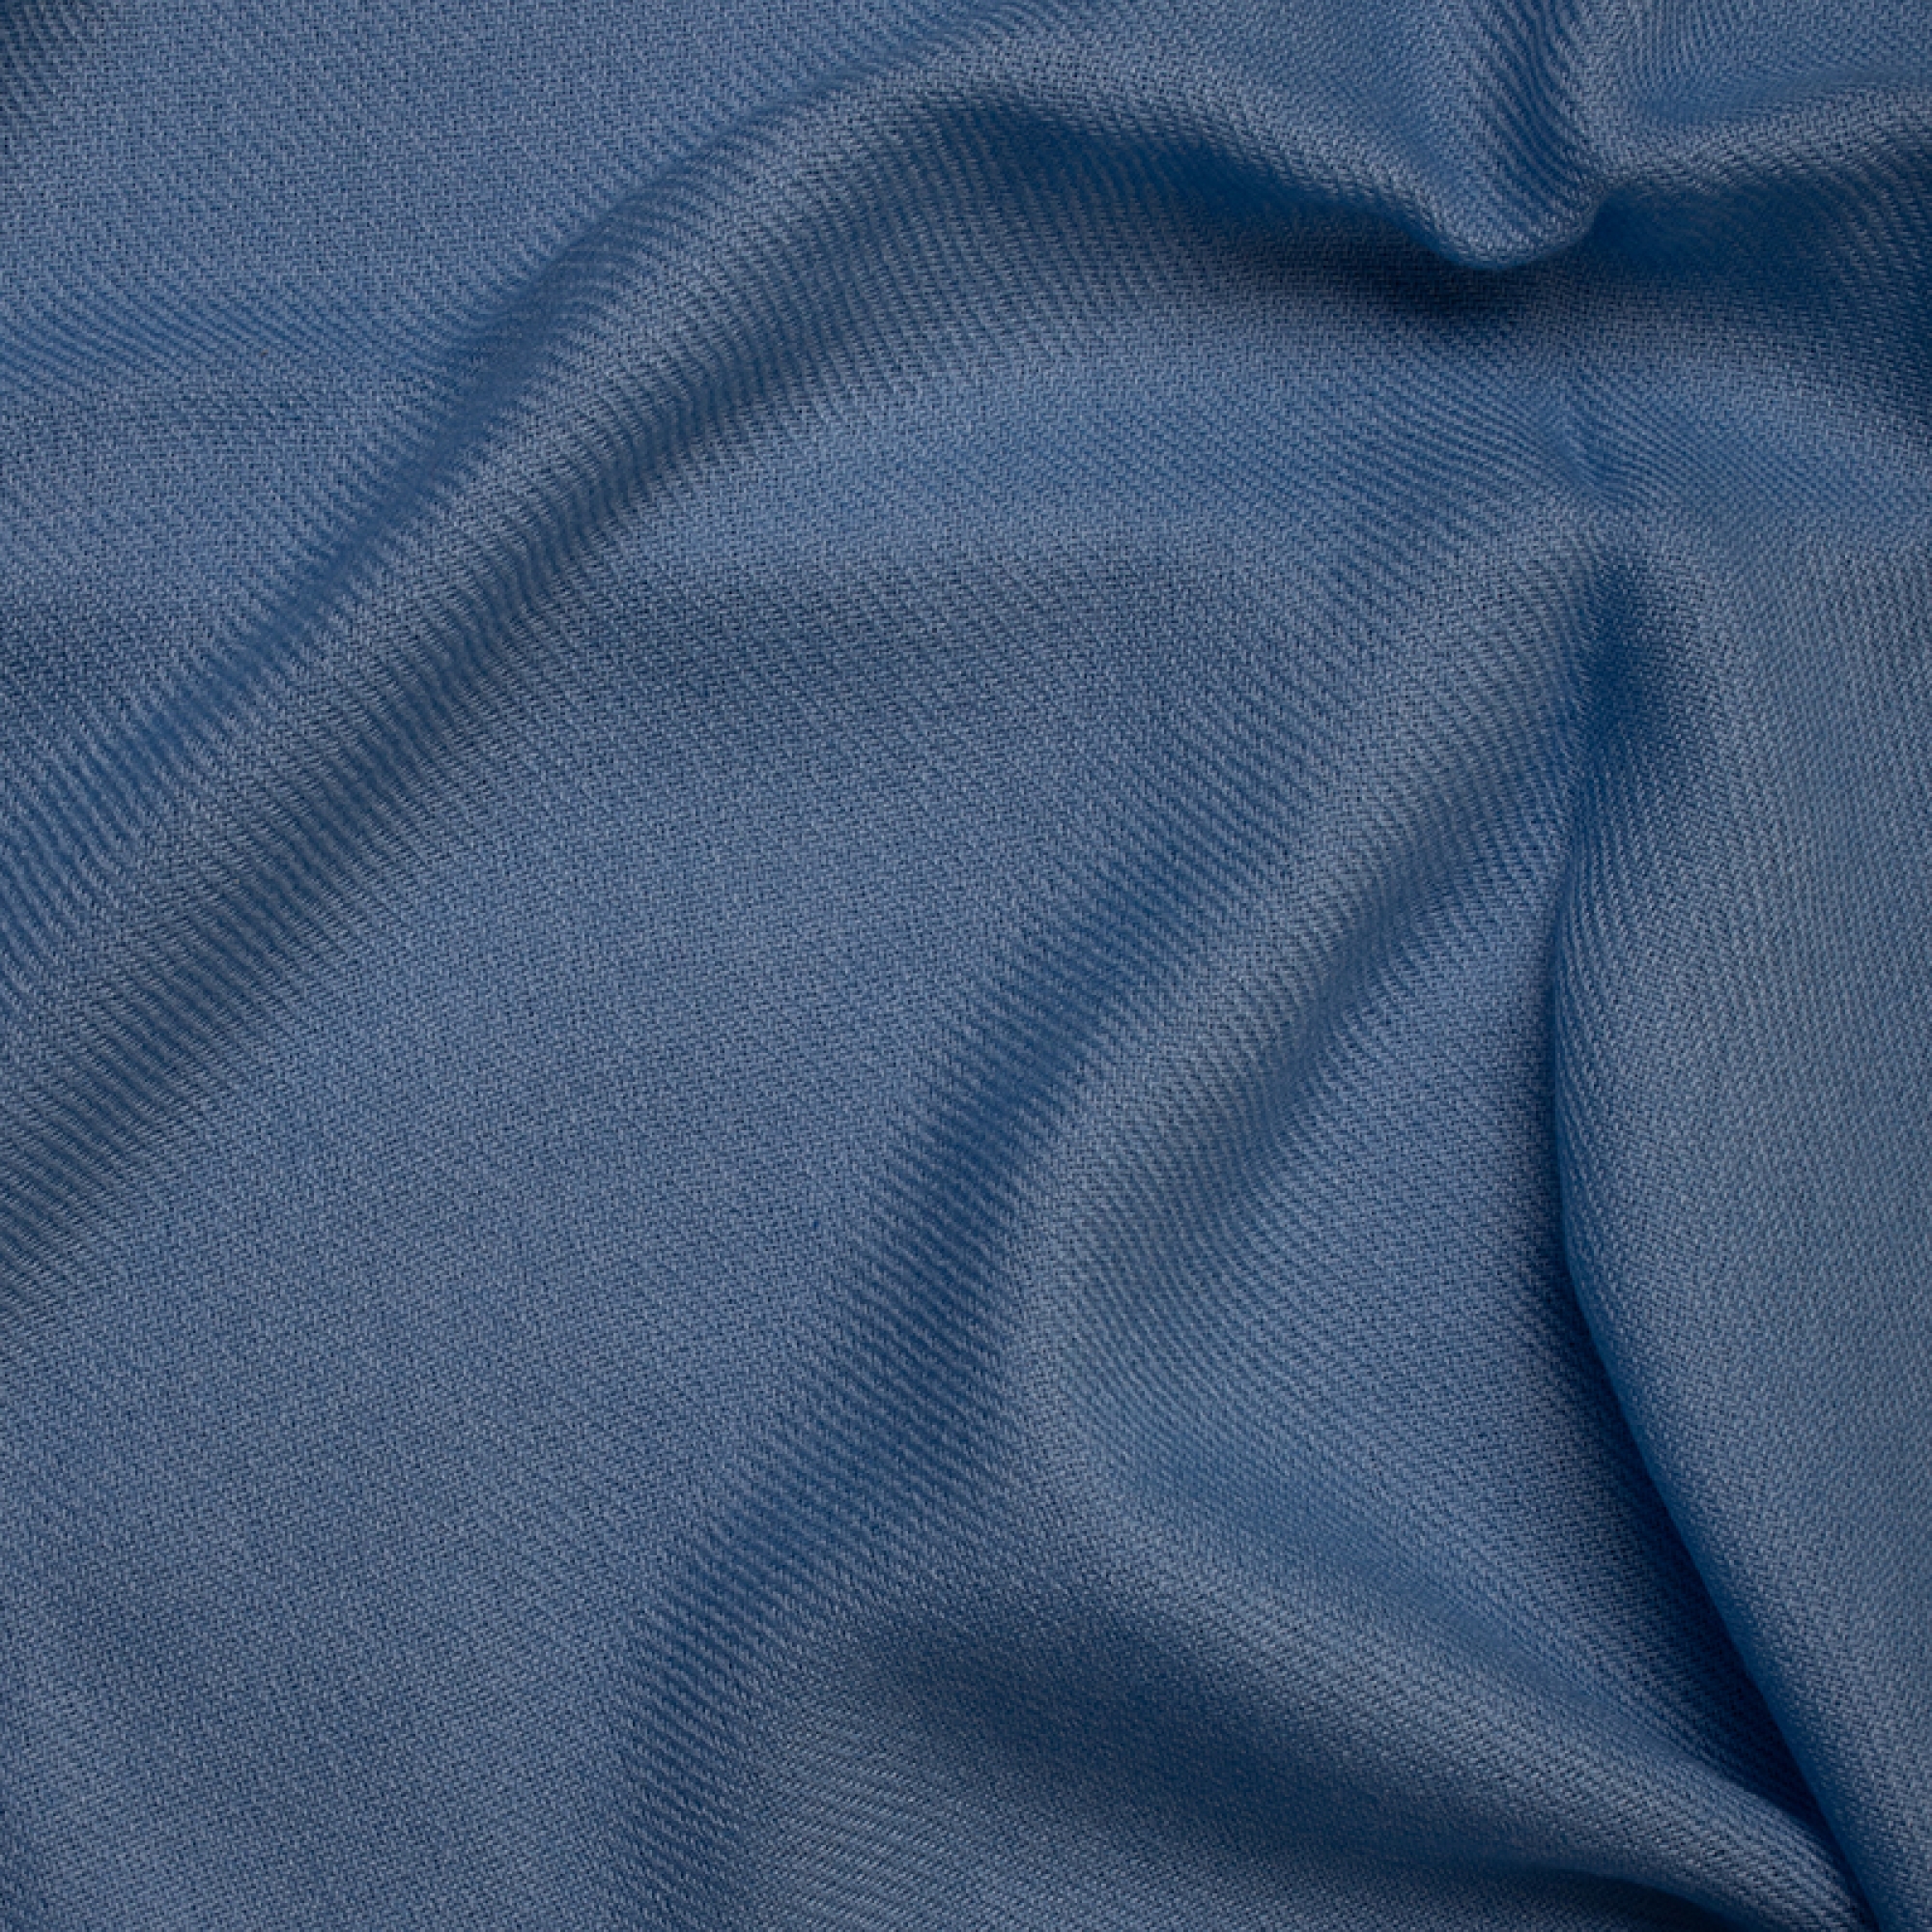 Cashmere accessoires frisbi 147 x 203 azur blau 147 x 203 cm